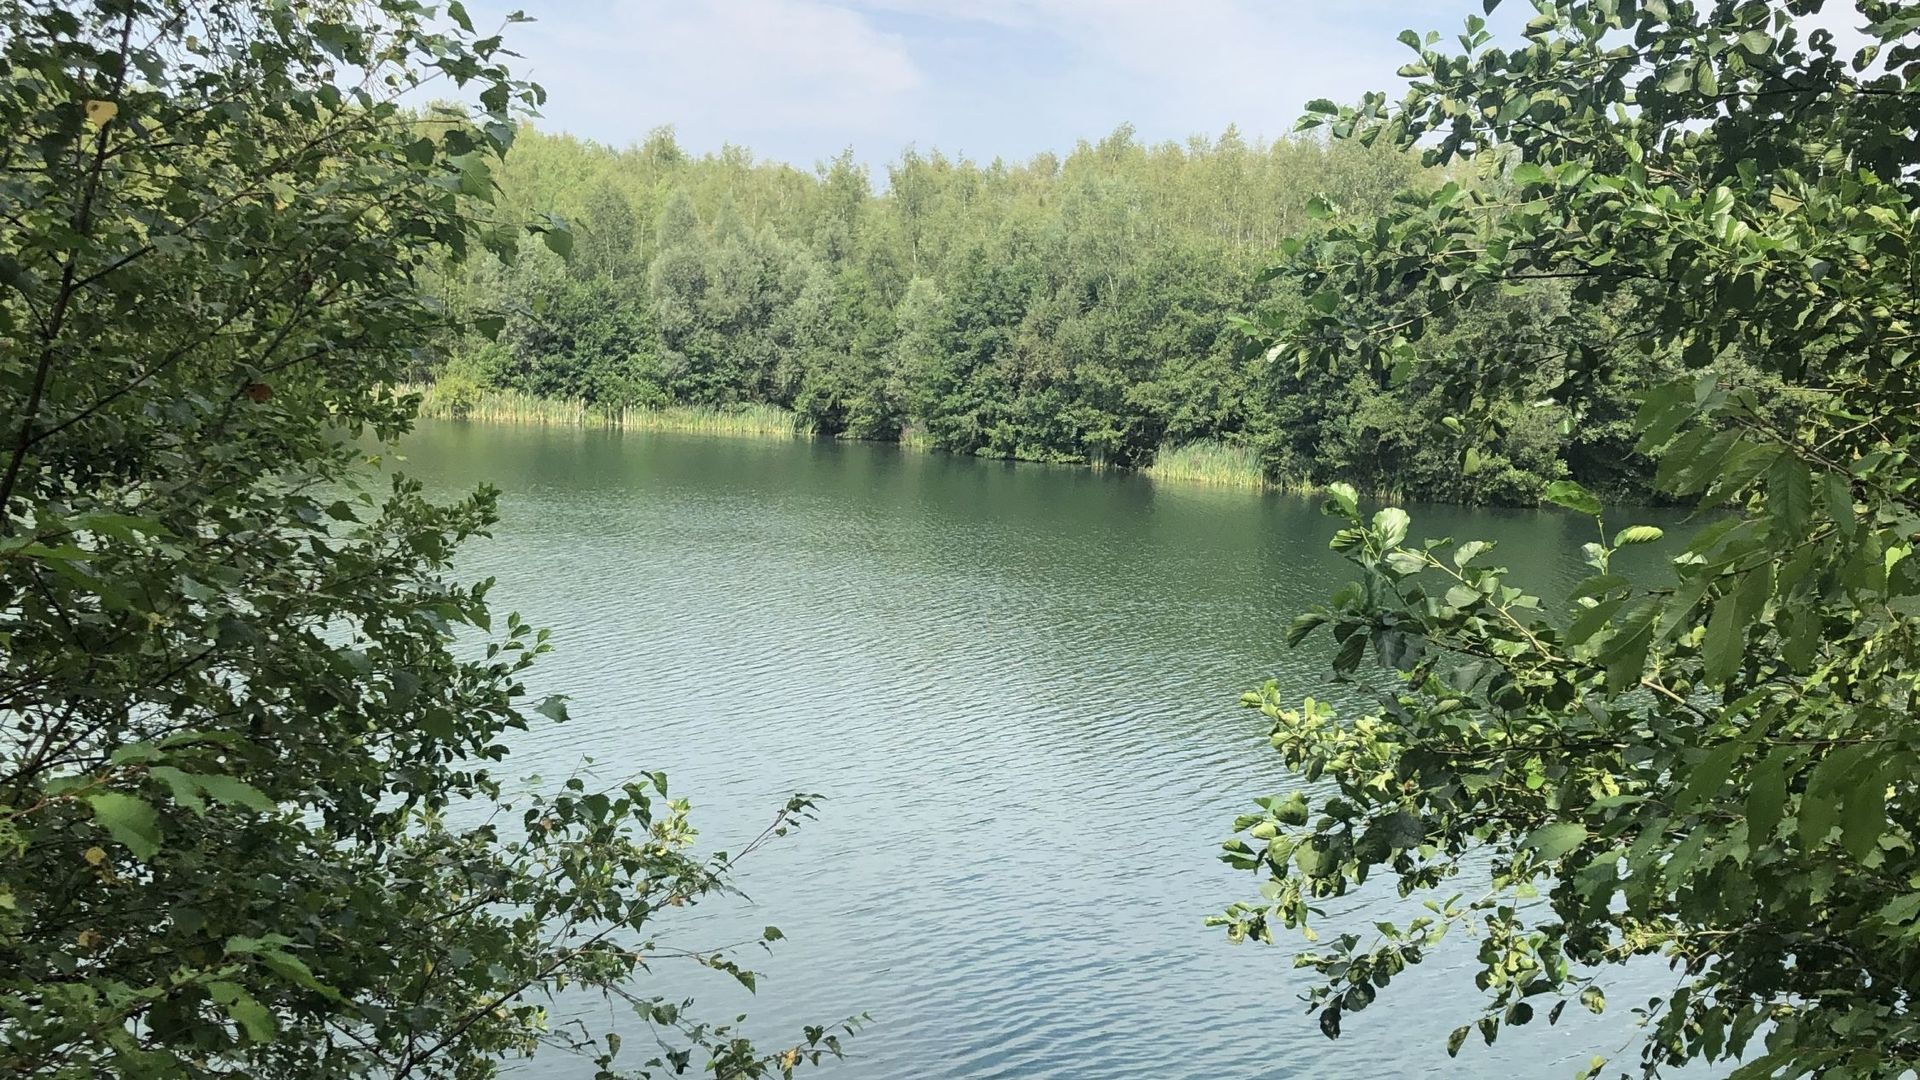 L’étang du Pircha, dans la région de Charleroi.